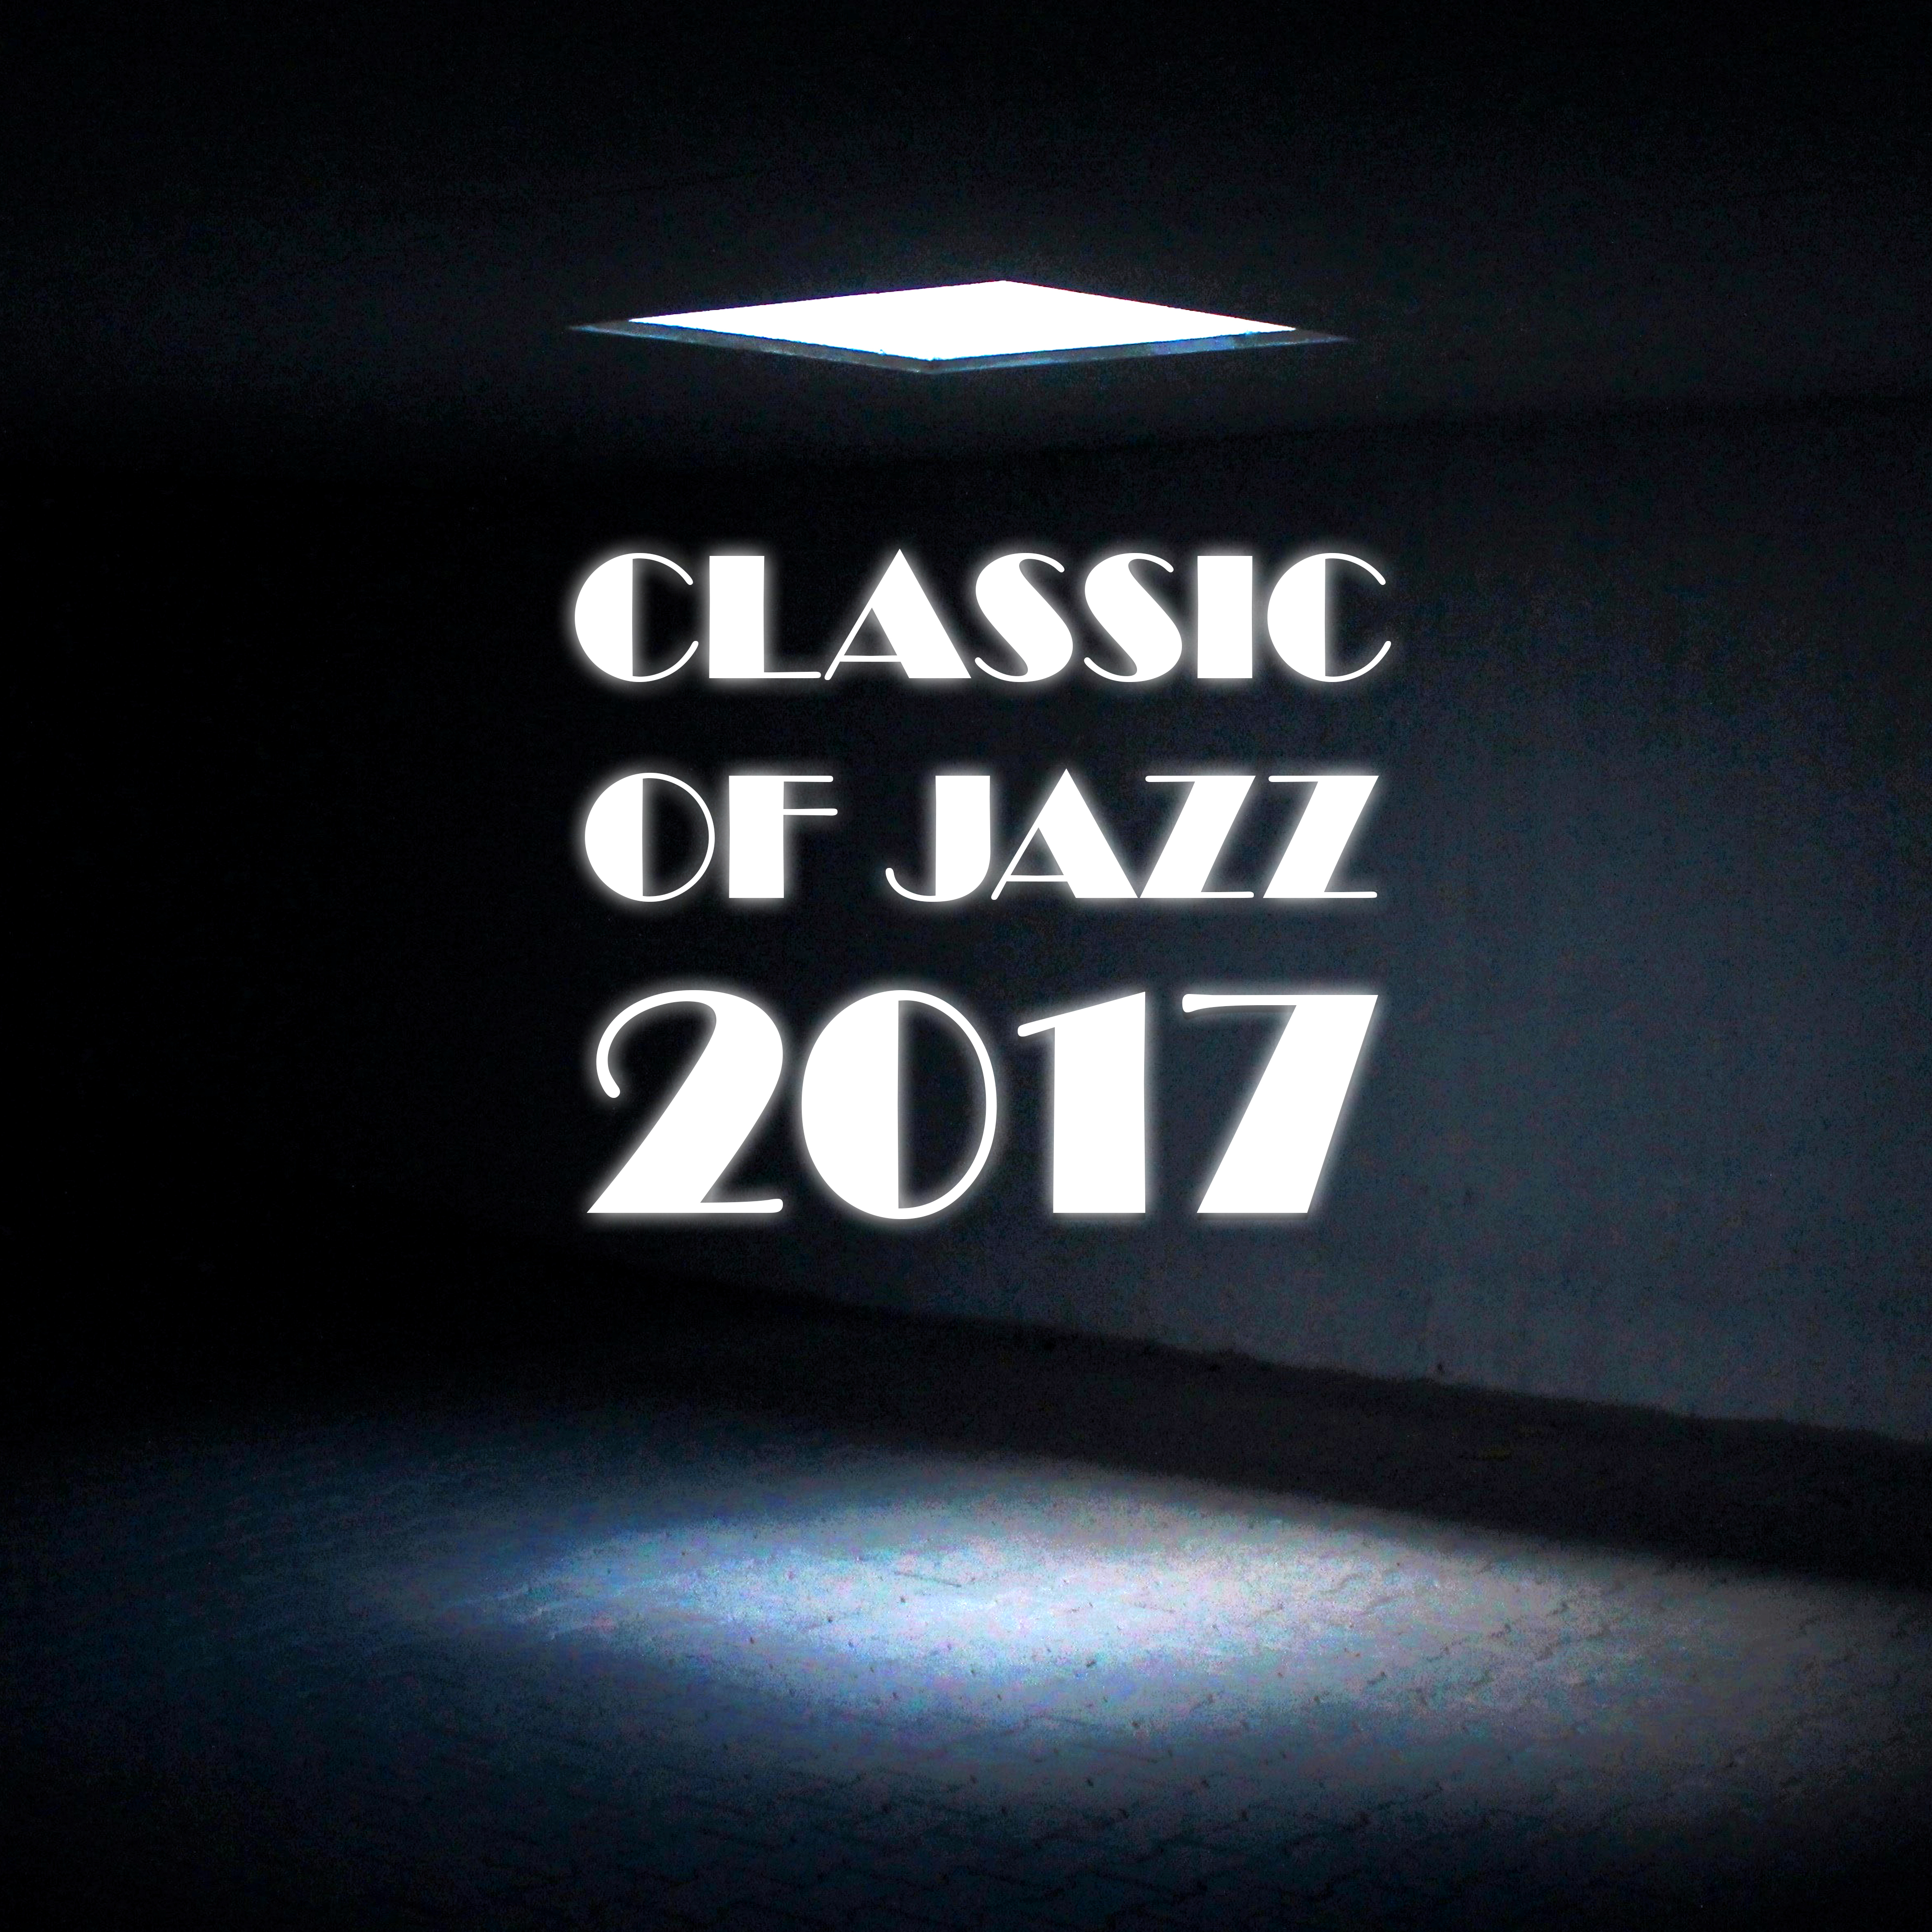 Classic of Jazz 2017